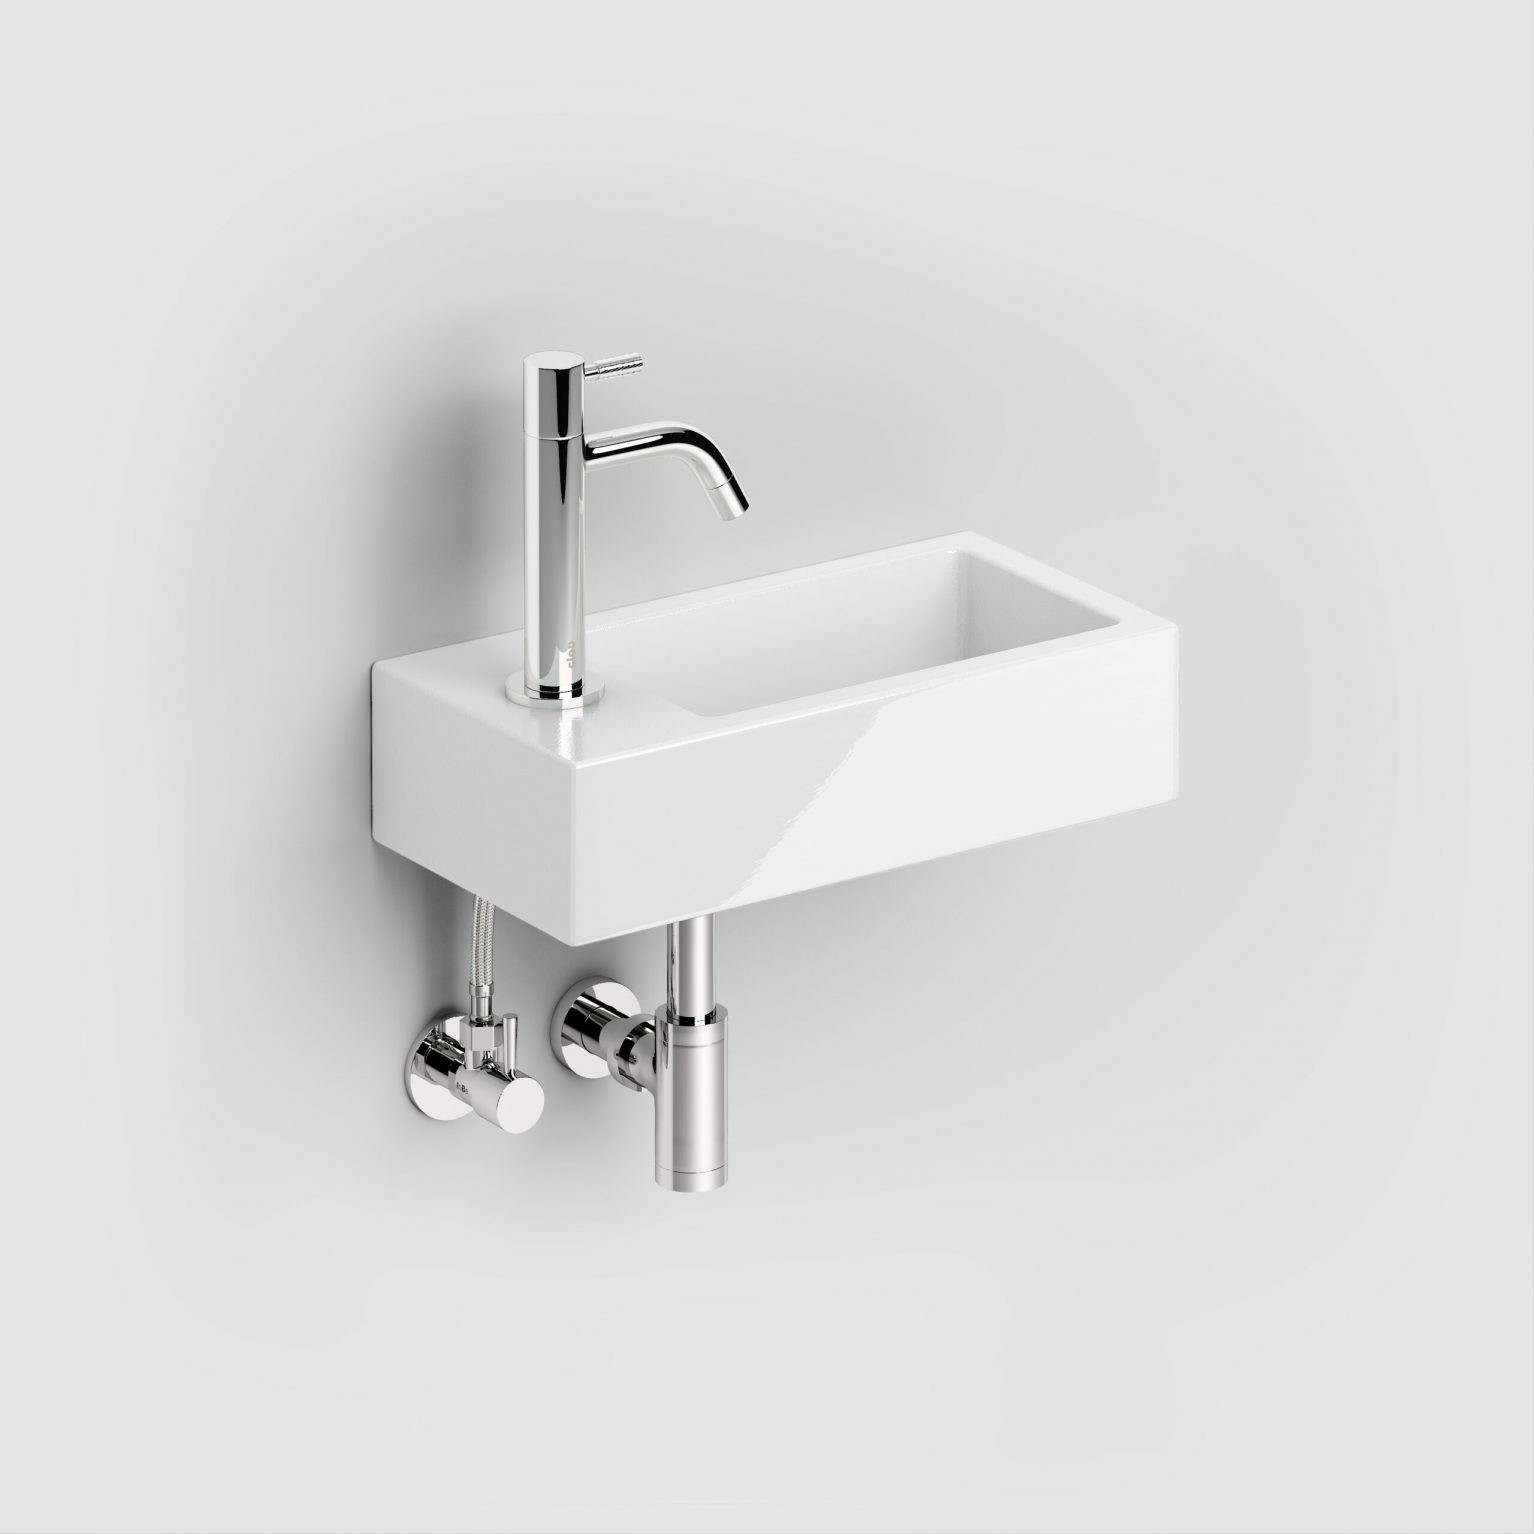 wastafel-hoekstop-kraan-chroom-toilet-badkamer-luxe-sanitair-InBe-clou-IB0645001-wasbakje-fontein-kraan